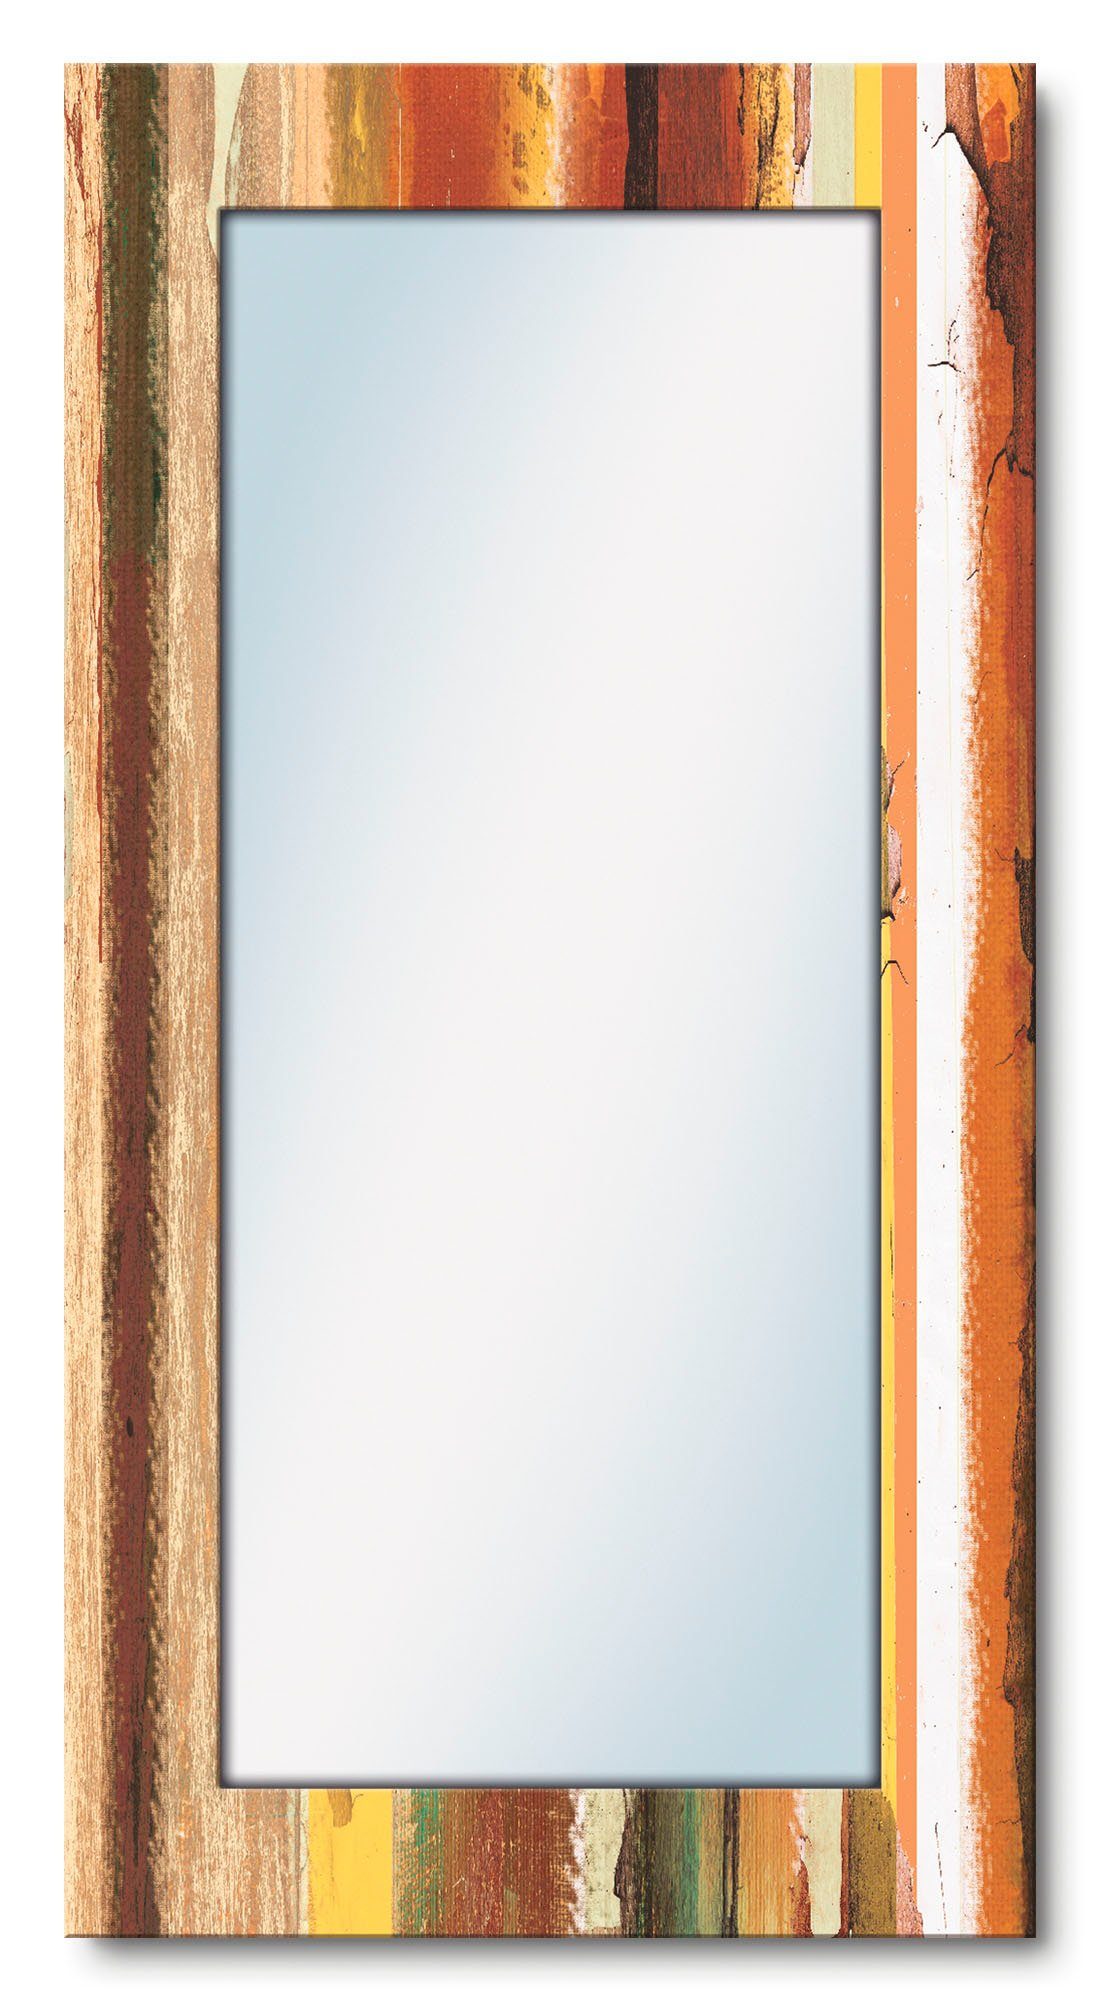 Artland Sierspiegel Home sweet home ingelijste spiegel voor het hele lichaam met motiefrand, geschikt voor kleine, smalle hal, halspiegel, mirror spiegel omrand om op te hangen